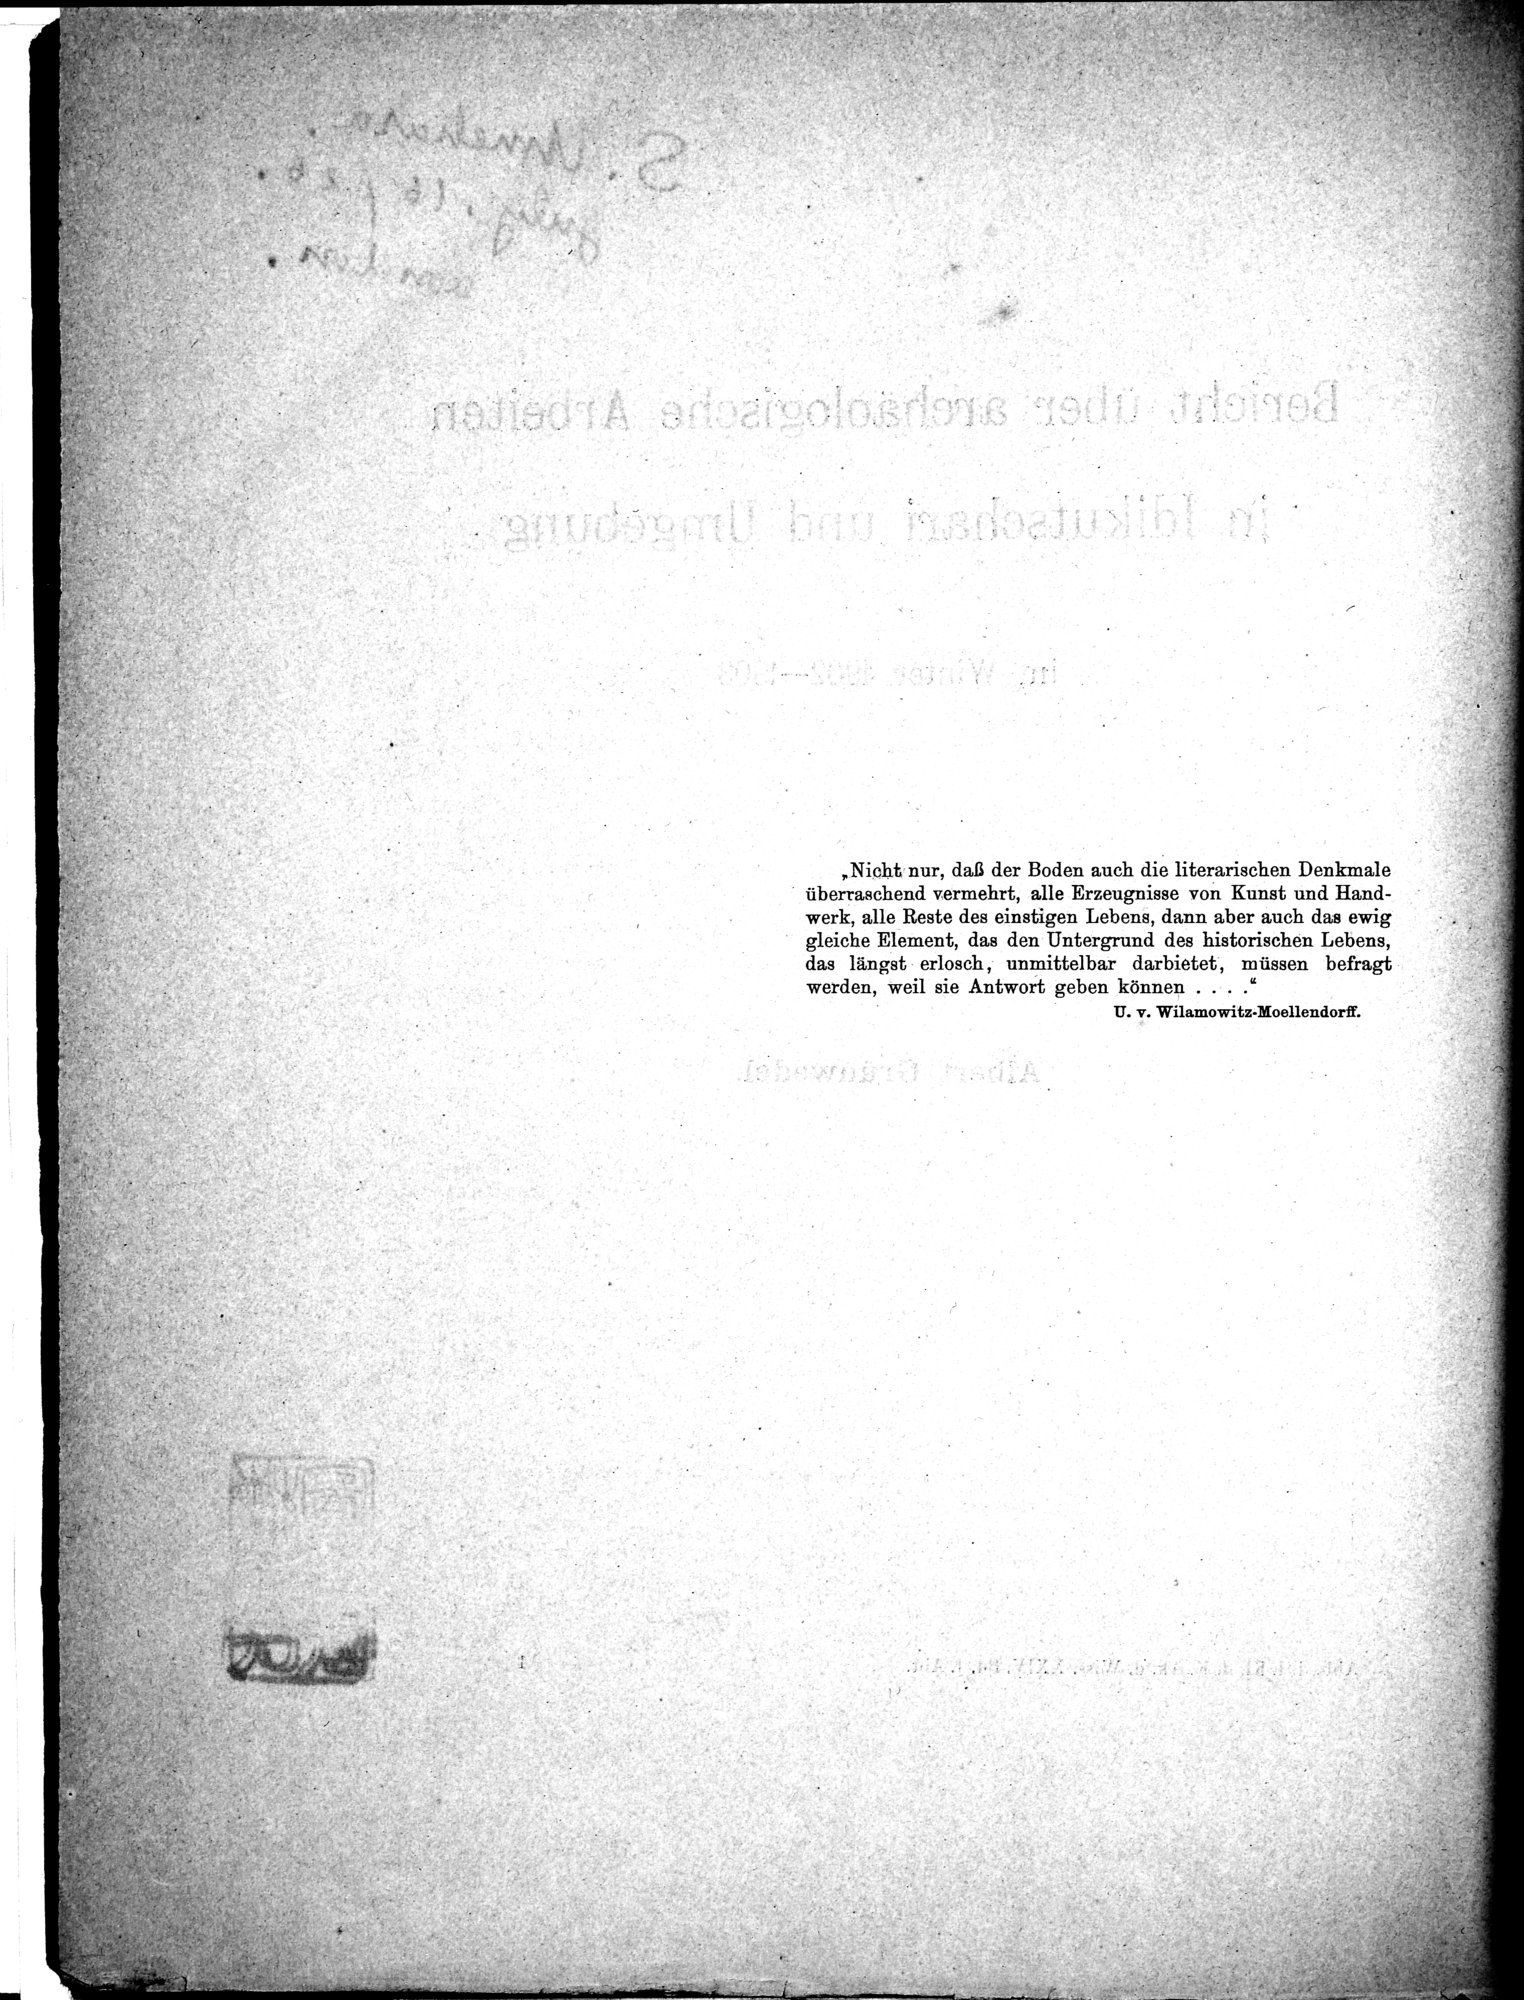 Bericht über archäologische Arbeiten in Idikutschari und Umgebung im Winter 1902-1903 : vol.1 / Page 8 (Grayscale High Resolution Image)